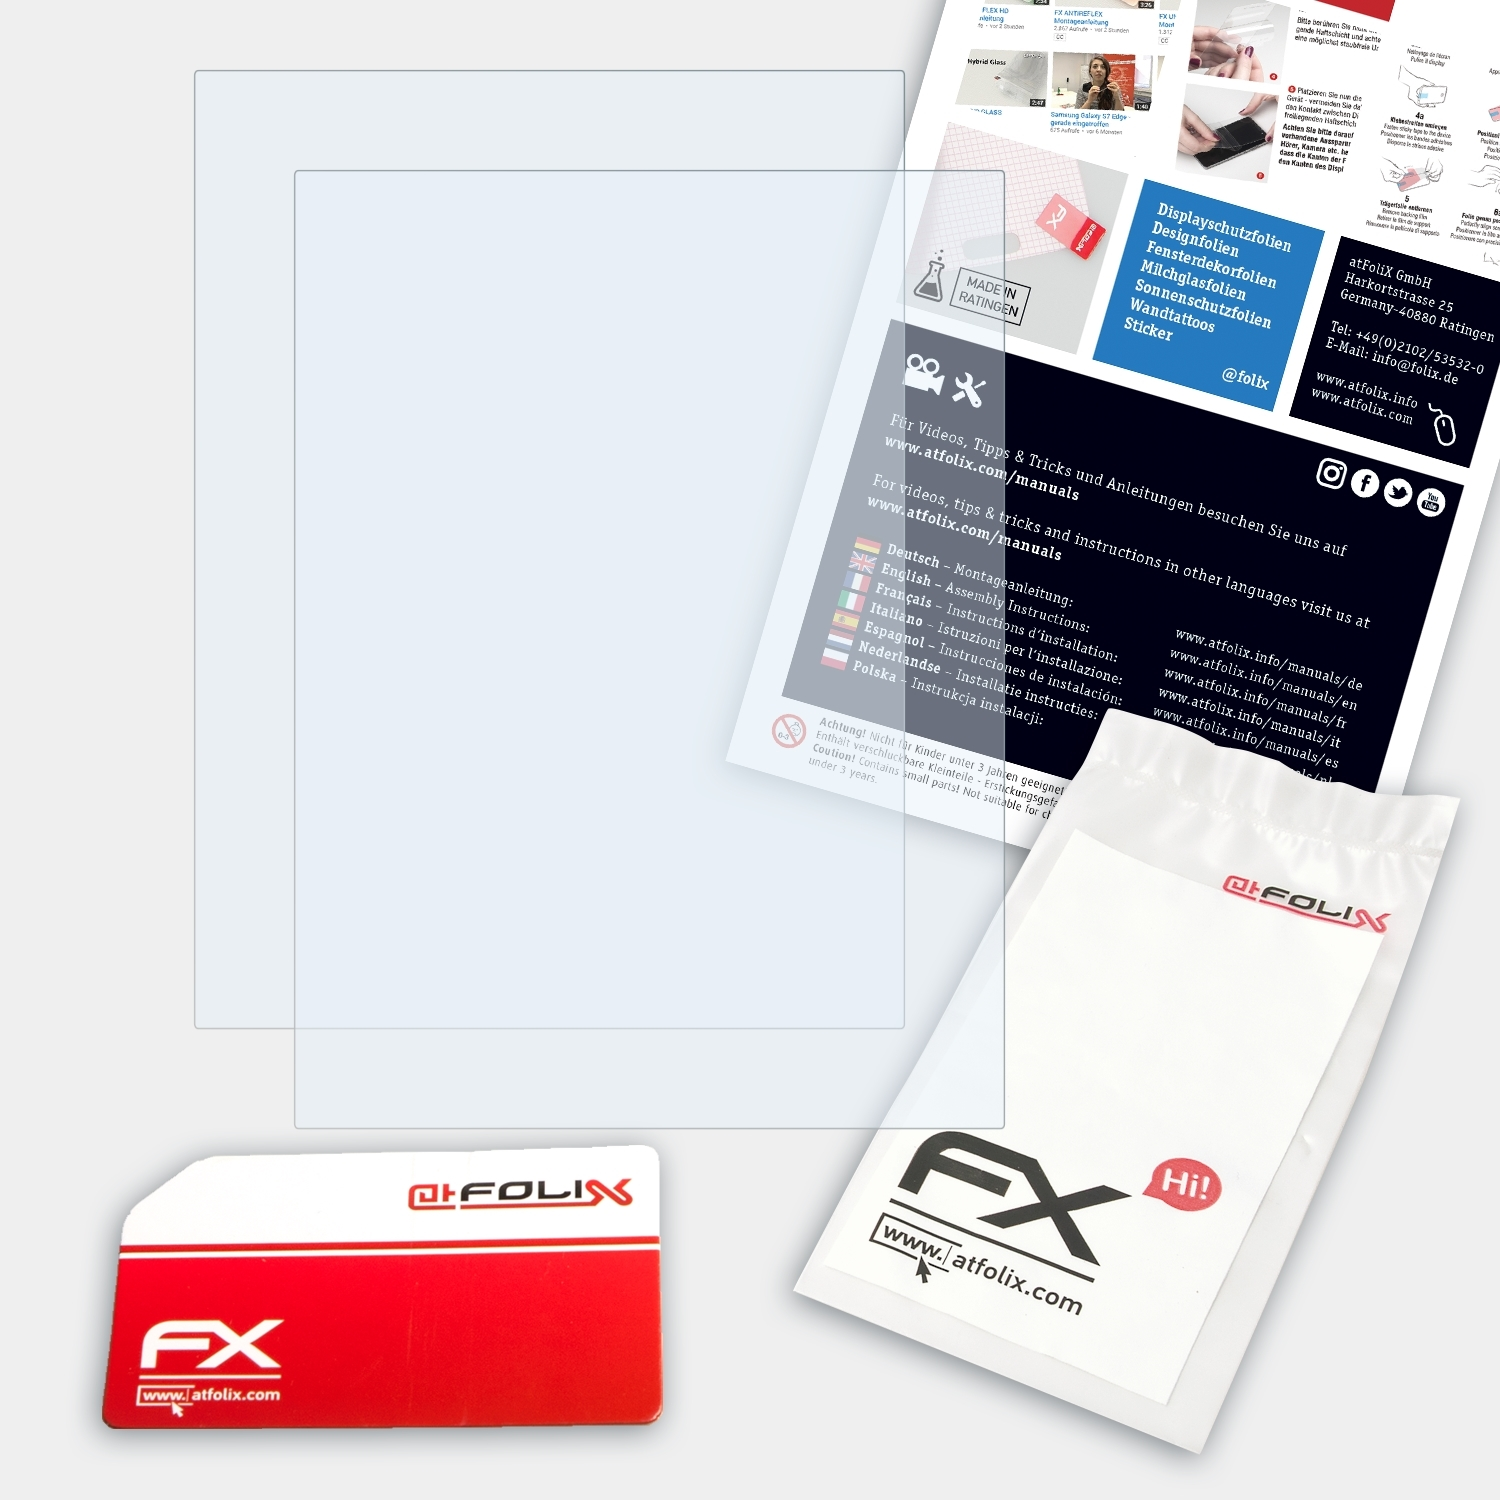 ATFOLIX 2x Edition) Sony PRS-600 Displayschutz(für Touch Reader FX-Clear